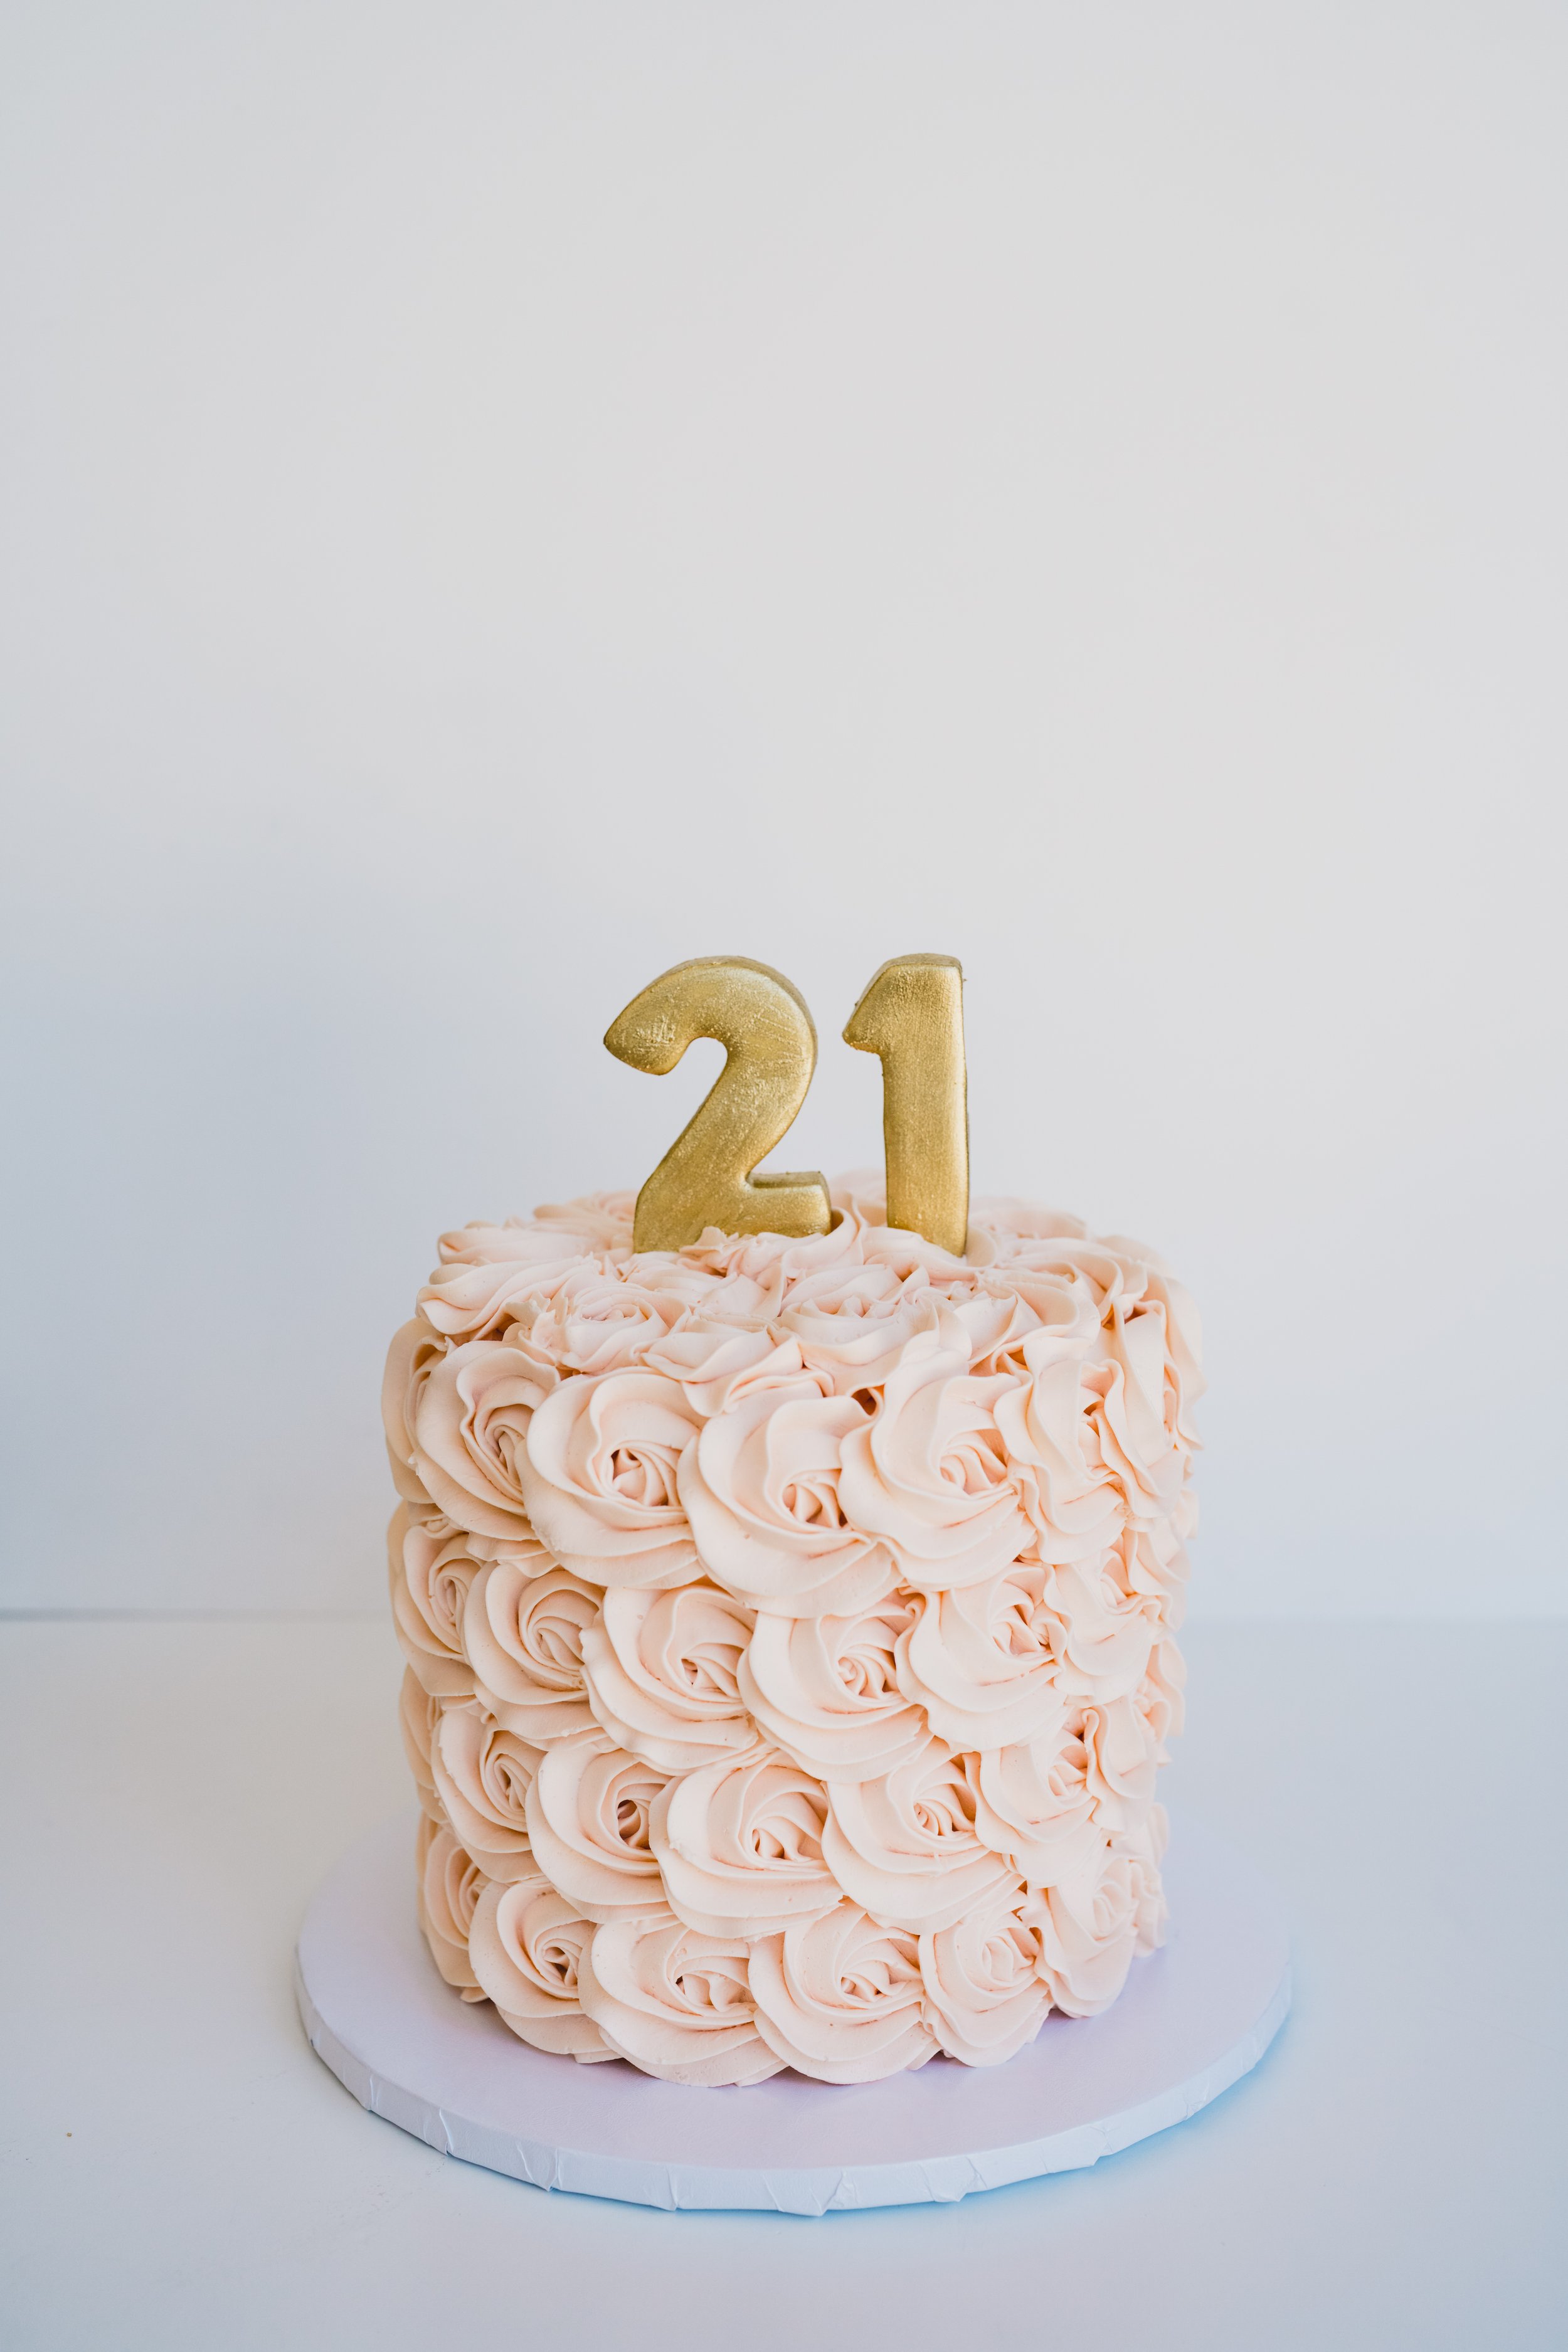 engle-olson-acs-21st-birthday-rosette-cake- (1 of 5).jpg